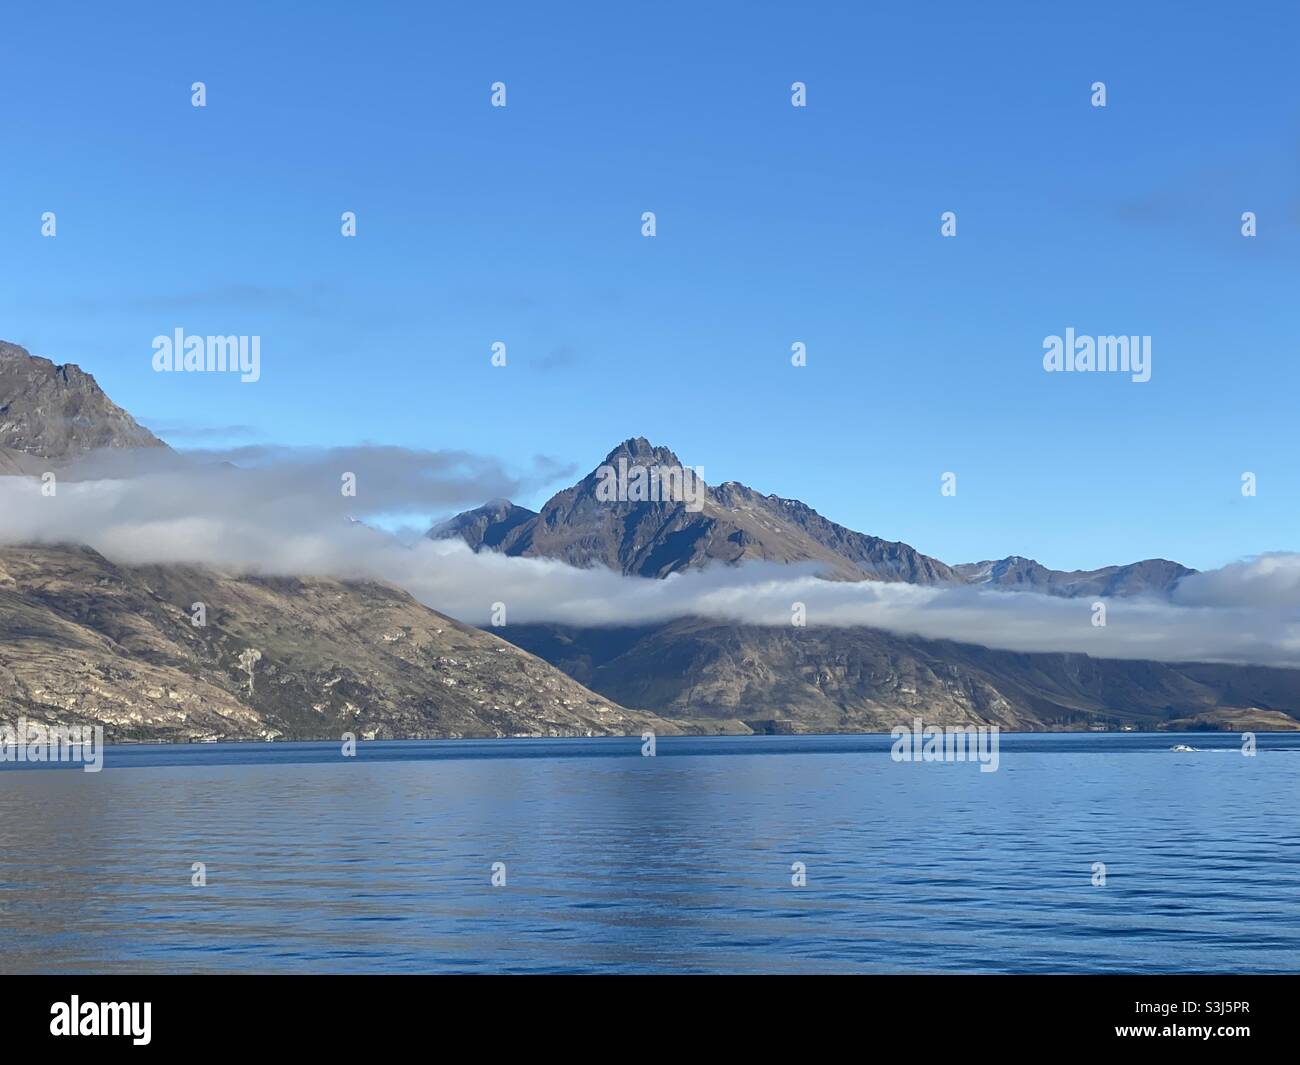 Lake Wakatipu, Queenstown,New Zealand Stock Photo